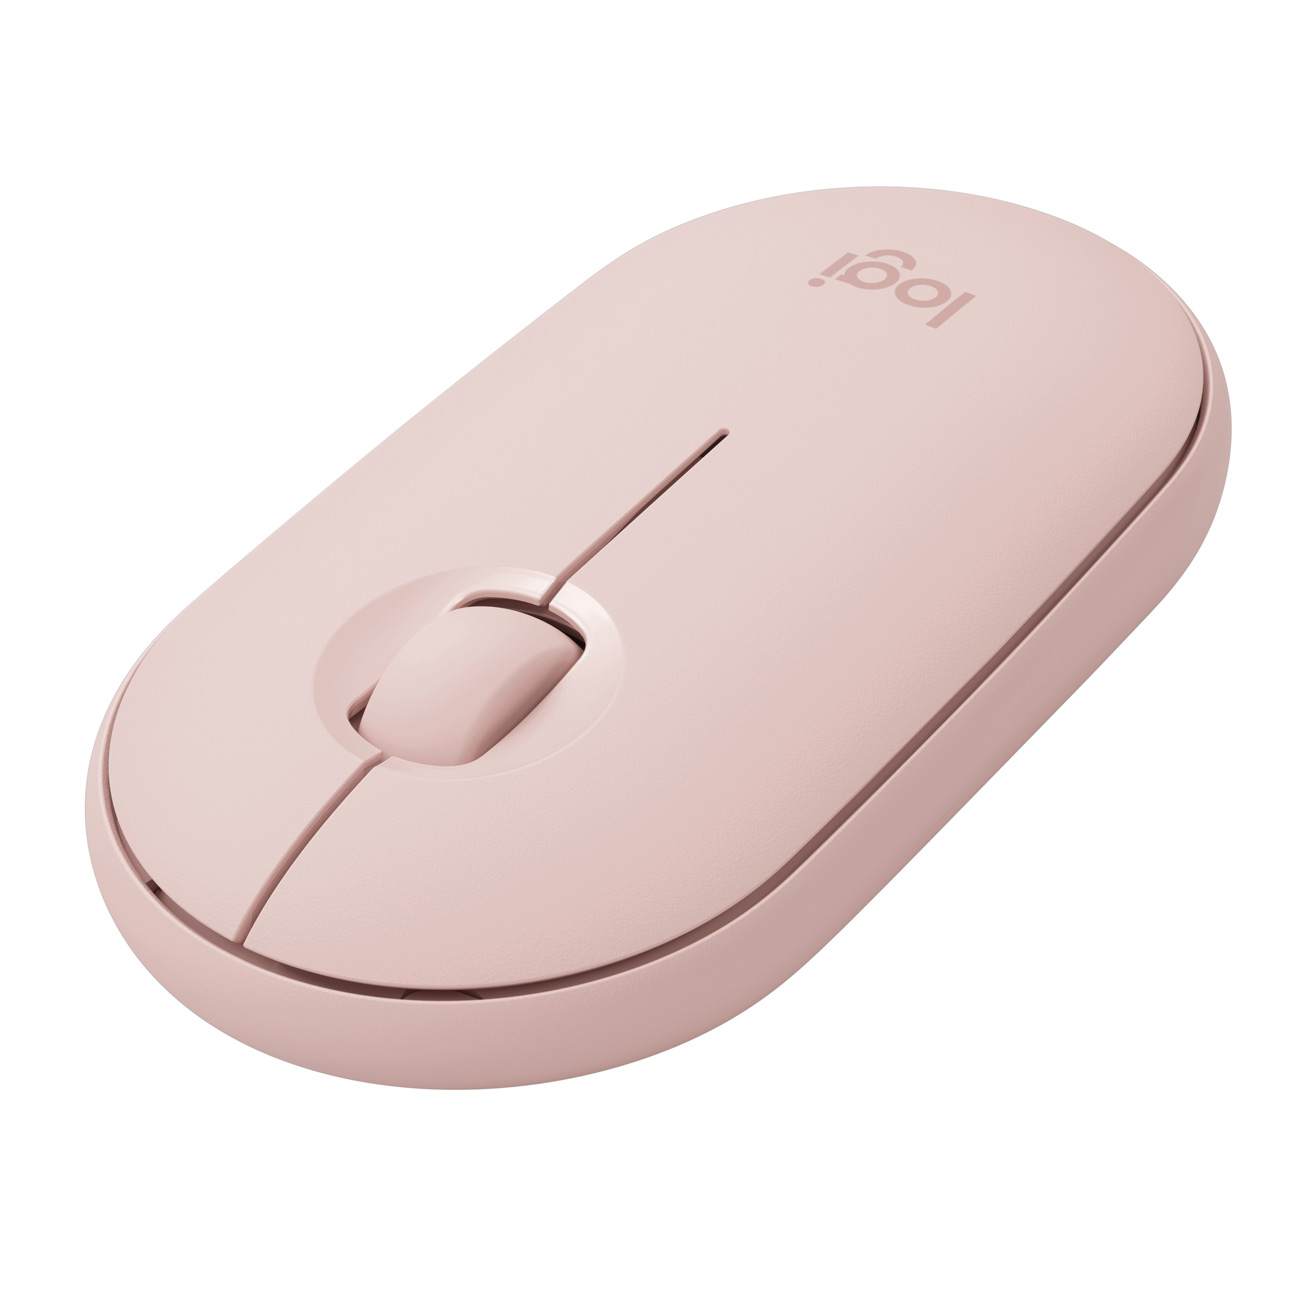 Фото — Мышь Logitech Wireless Mouse Pebble M350, розовый